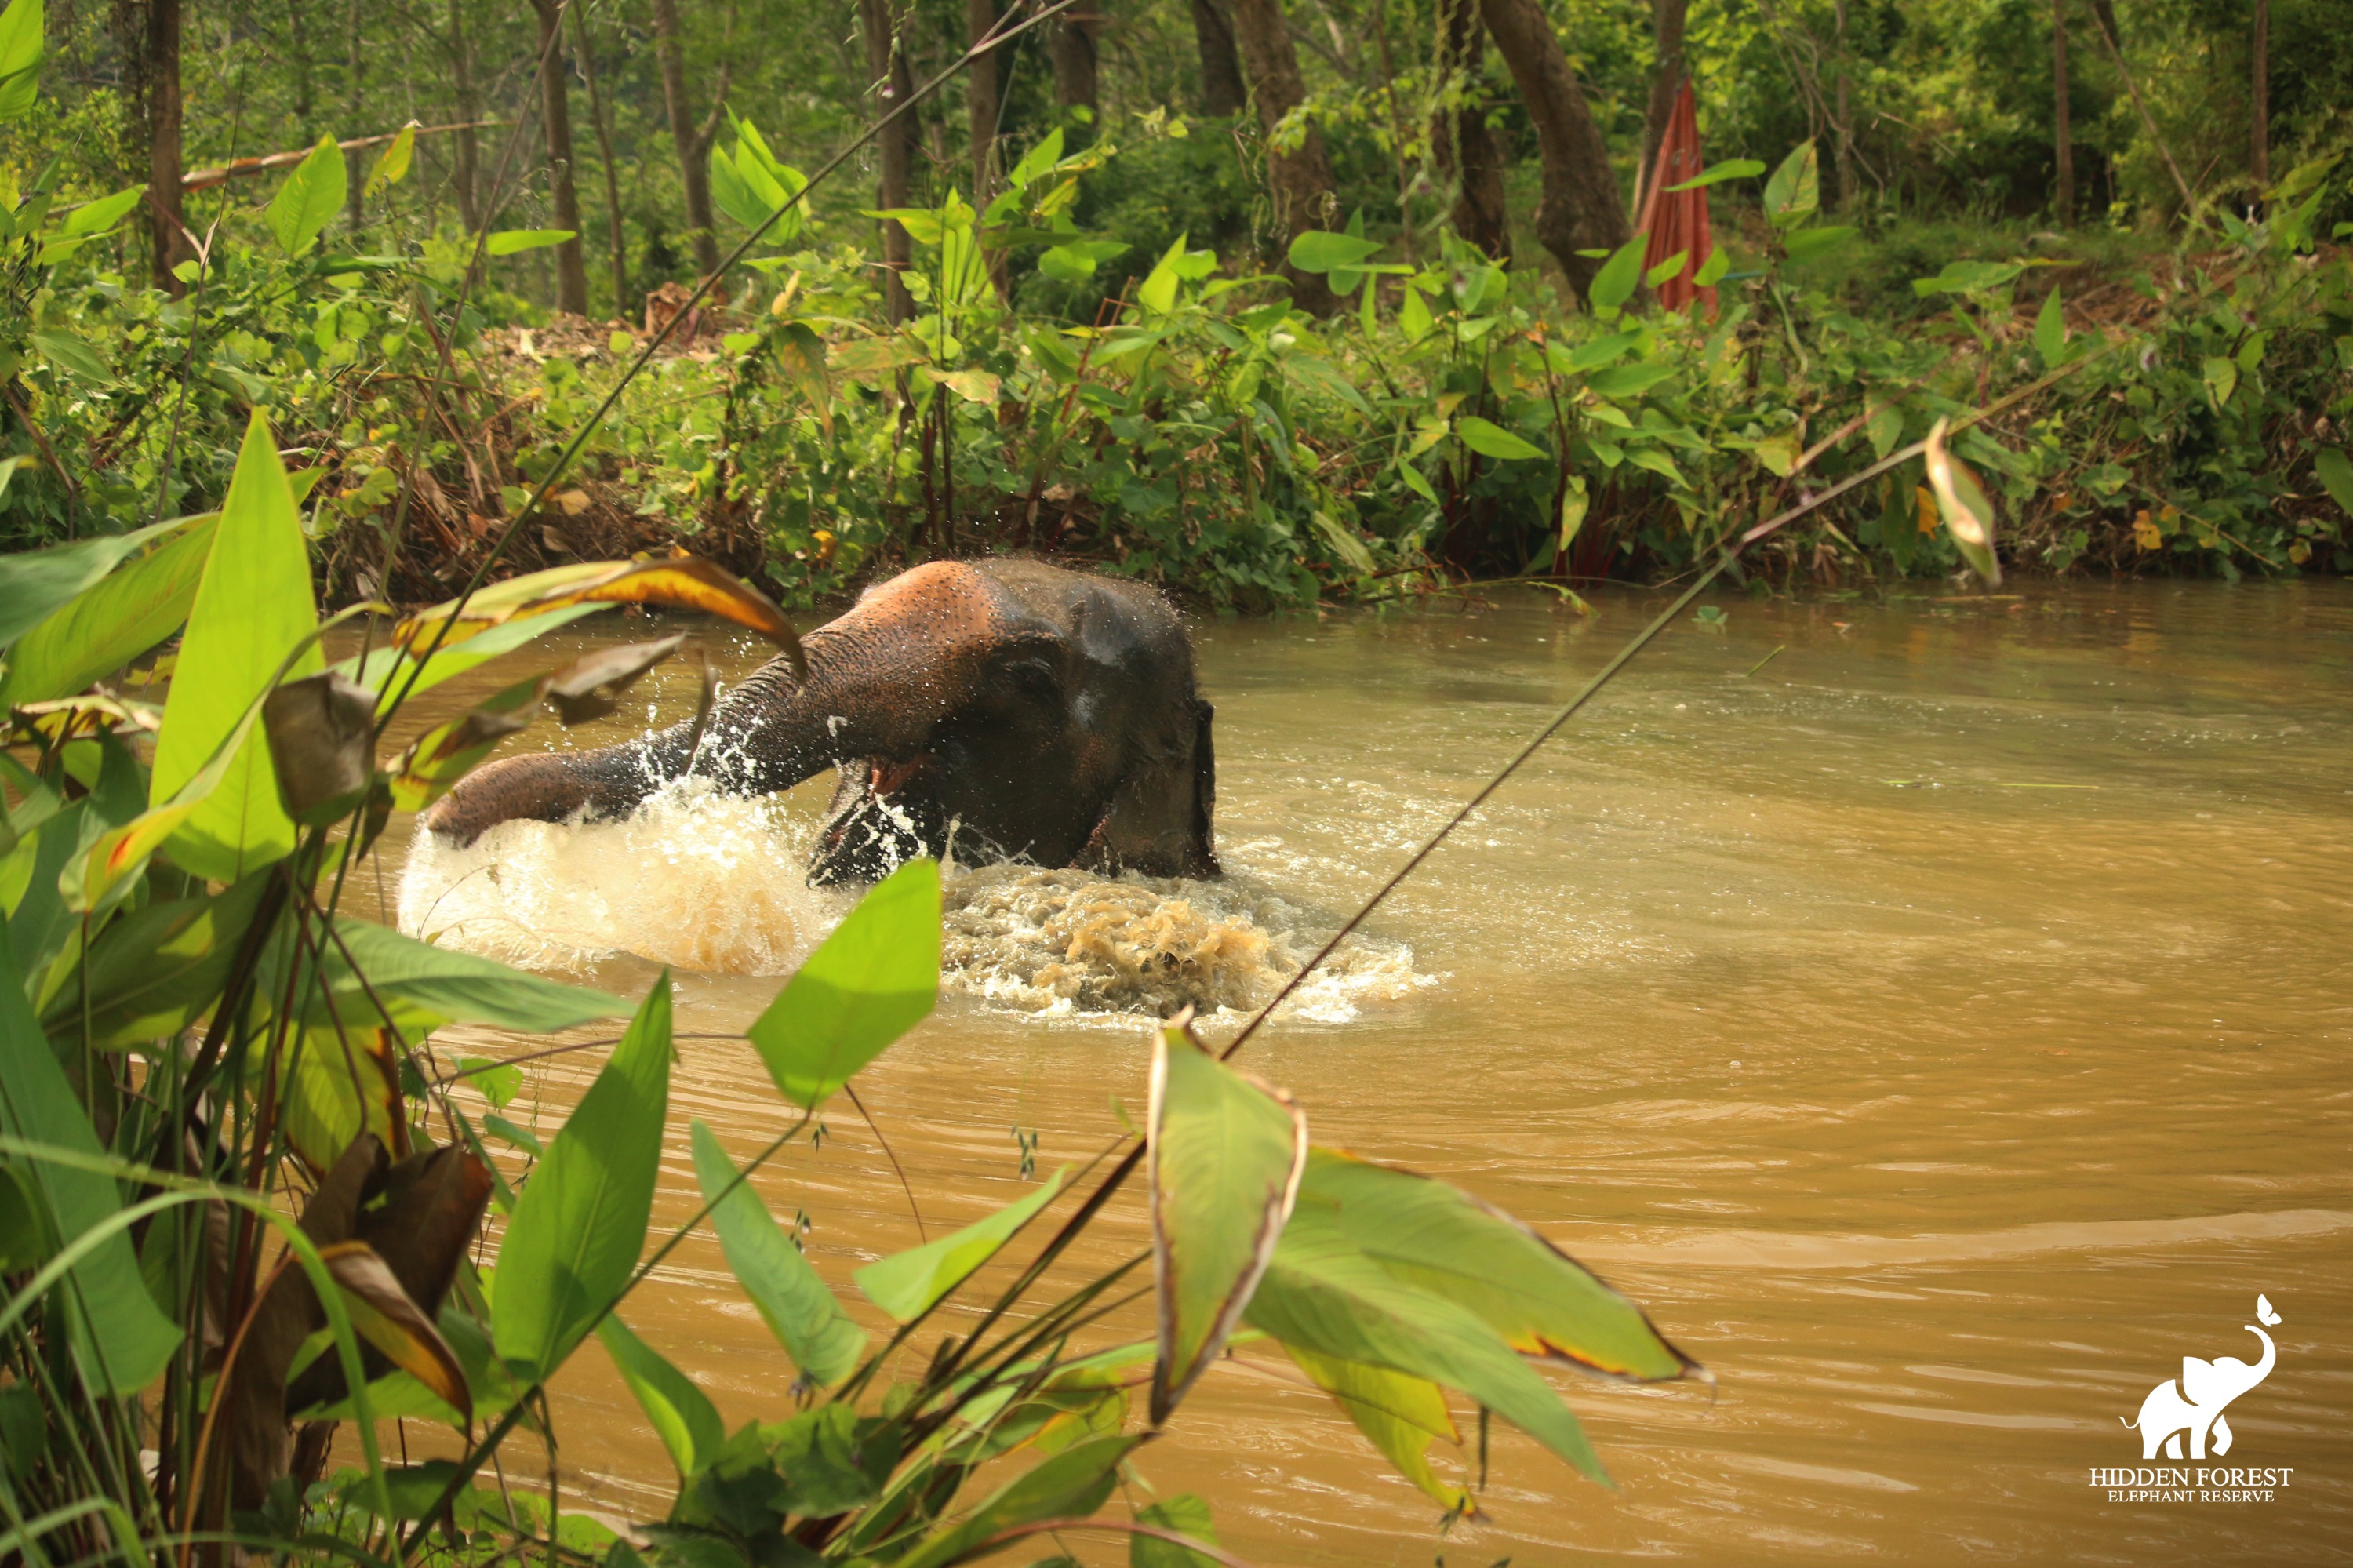 普吉島隱秘森林大象保護區體驗